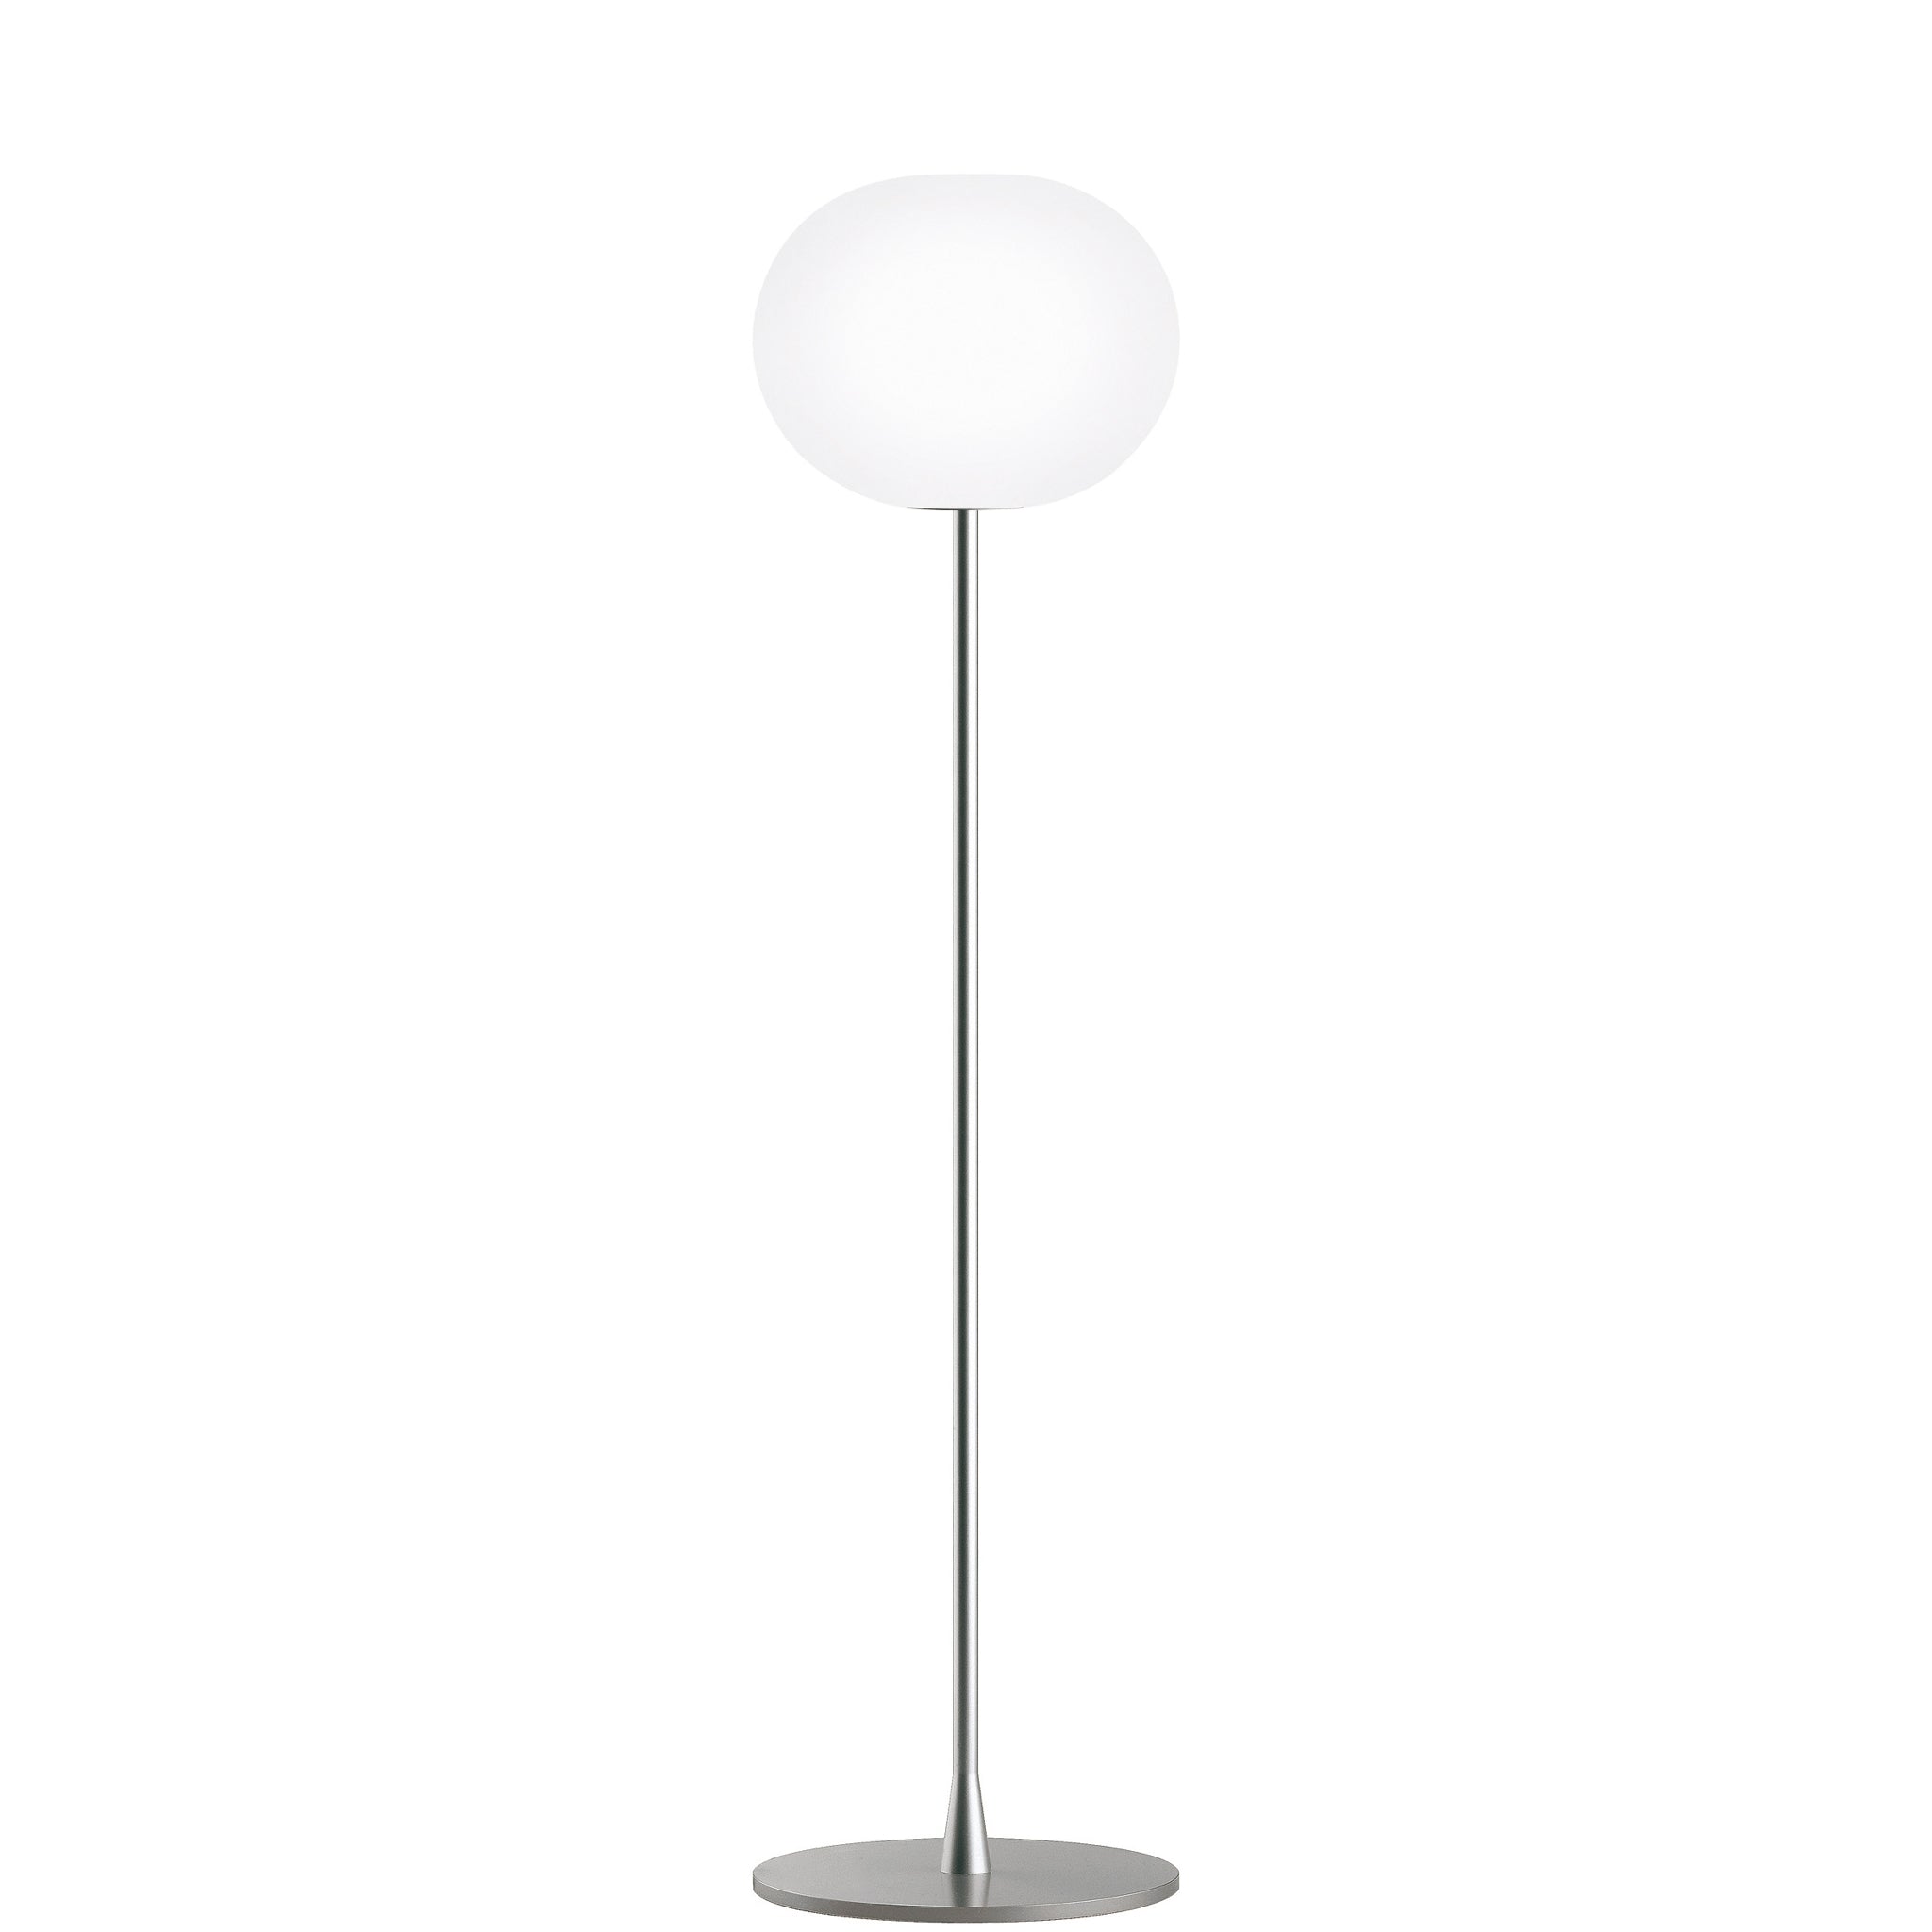 Glo-Ball Floor Lamp by Jasper Morrison for Flos